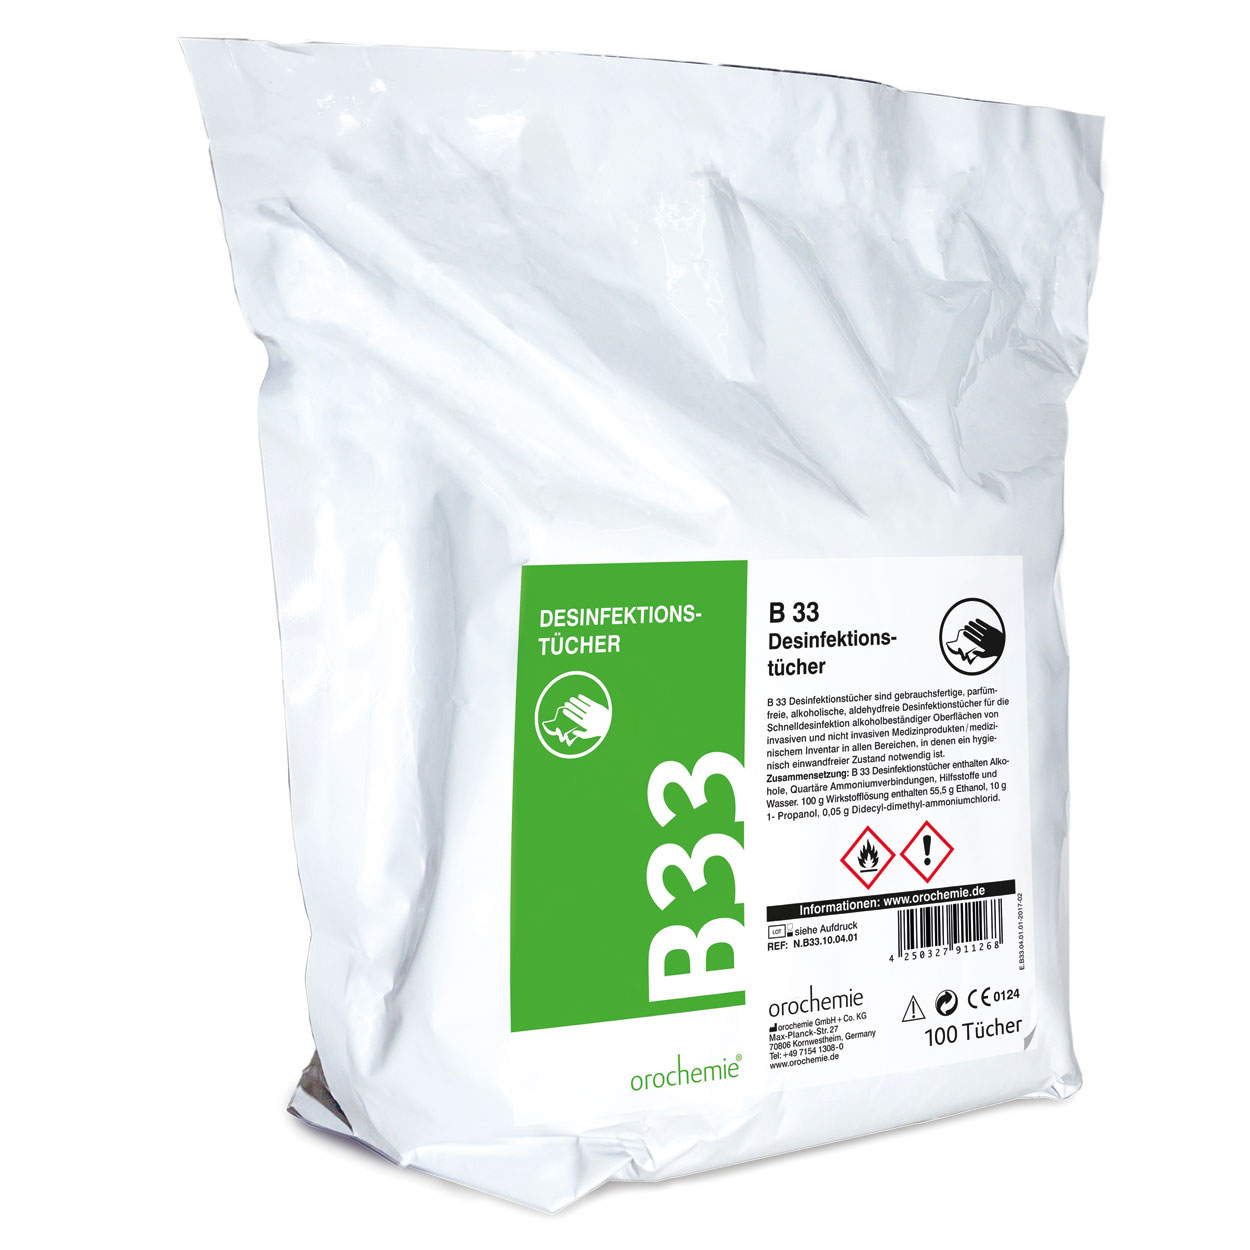 B 33 Desinfektionstücher - Karton à 4 Nachfüllpackungen à 100 Stück